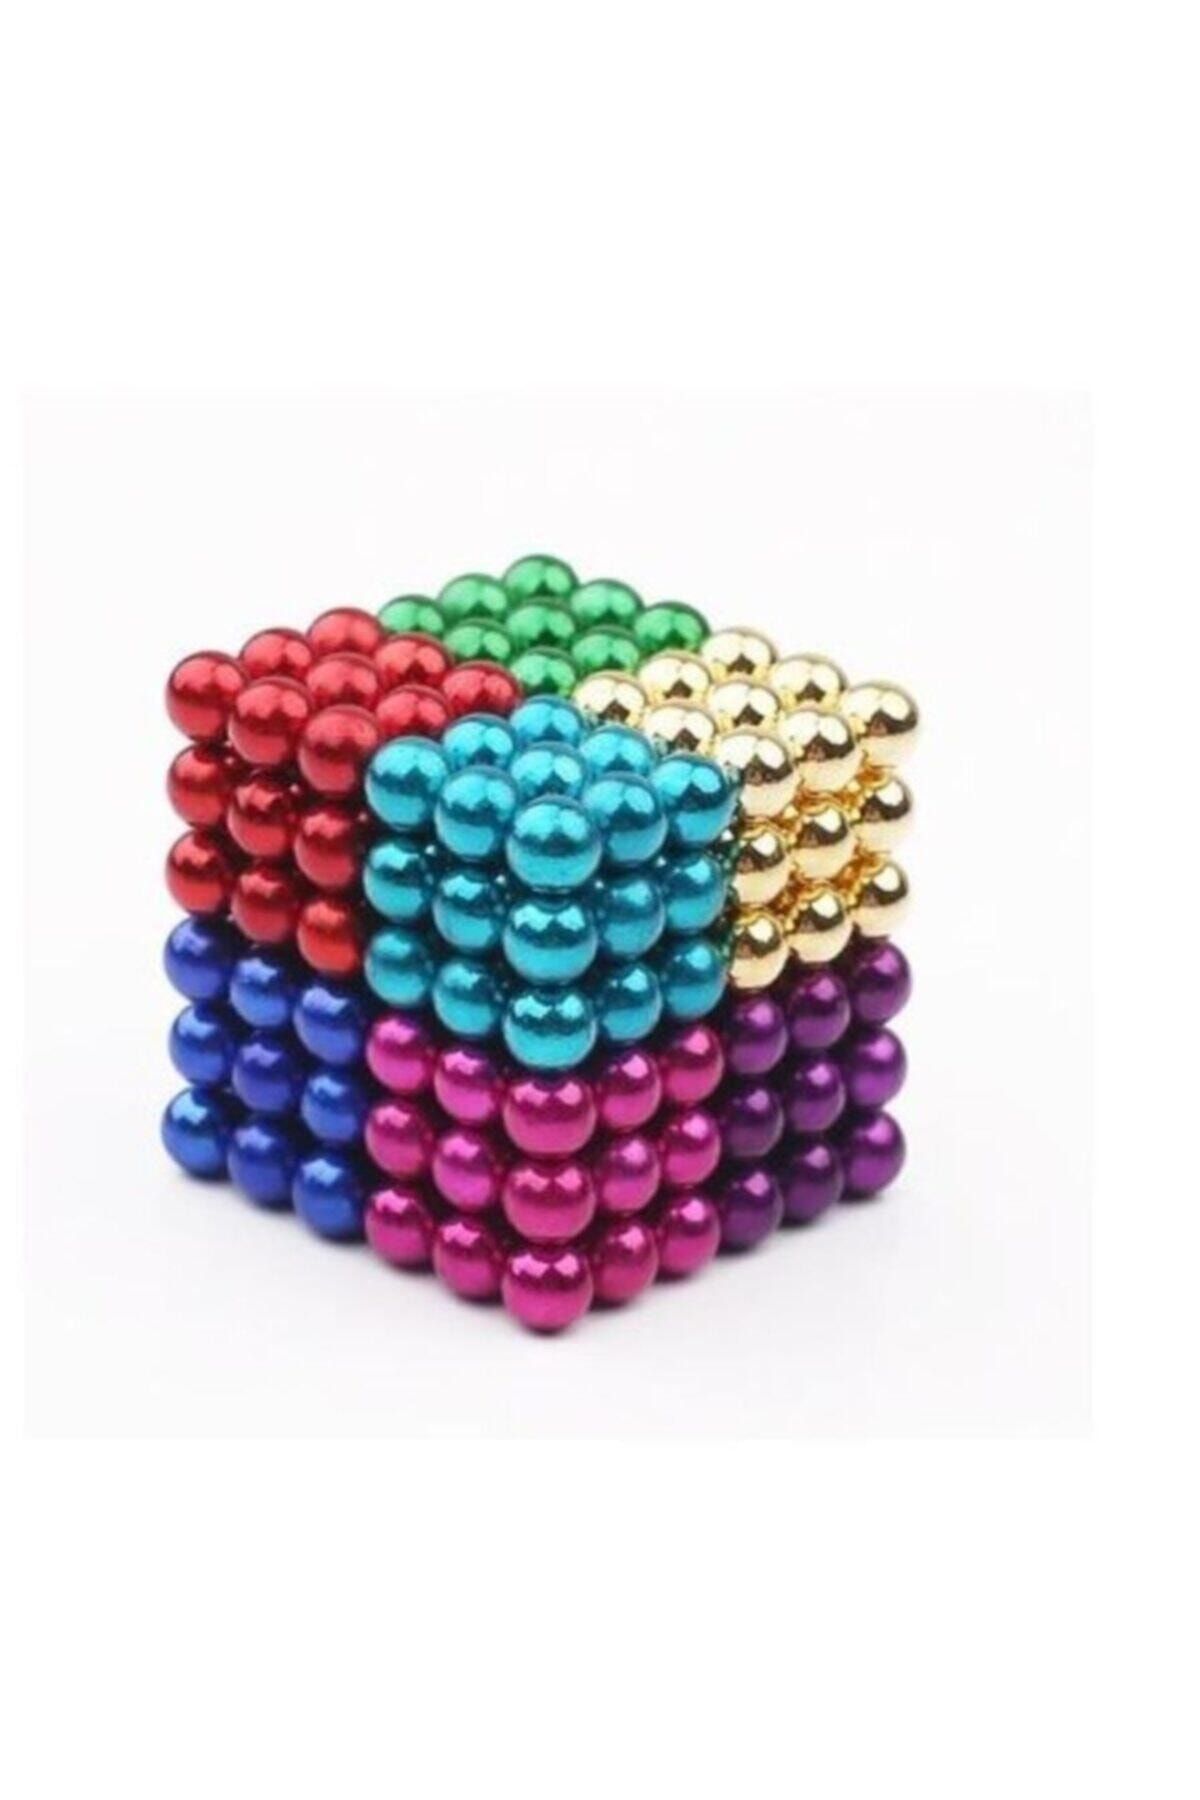 Aksh 8 Karışık Renkli Sekiz Renk Manyetik Toplar Neodyum Mıknatıs Bilye 216 Adet 5 Mm Neo Cube Neodymium